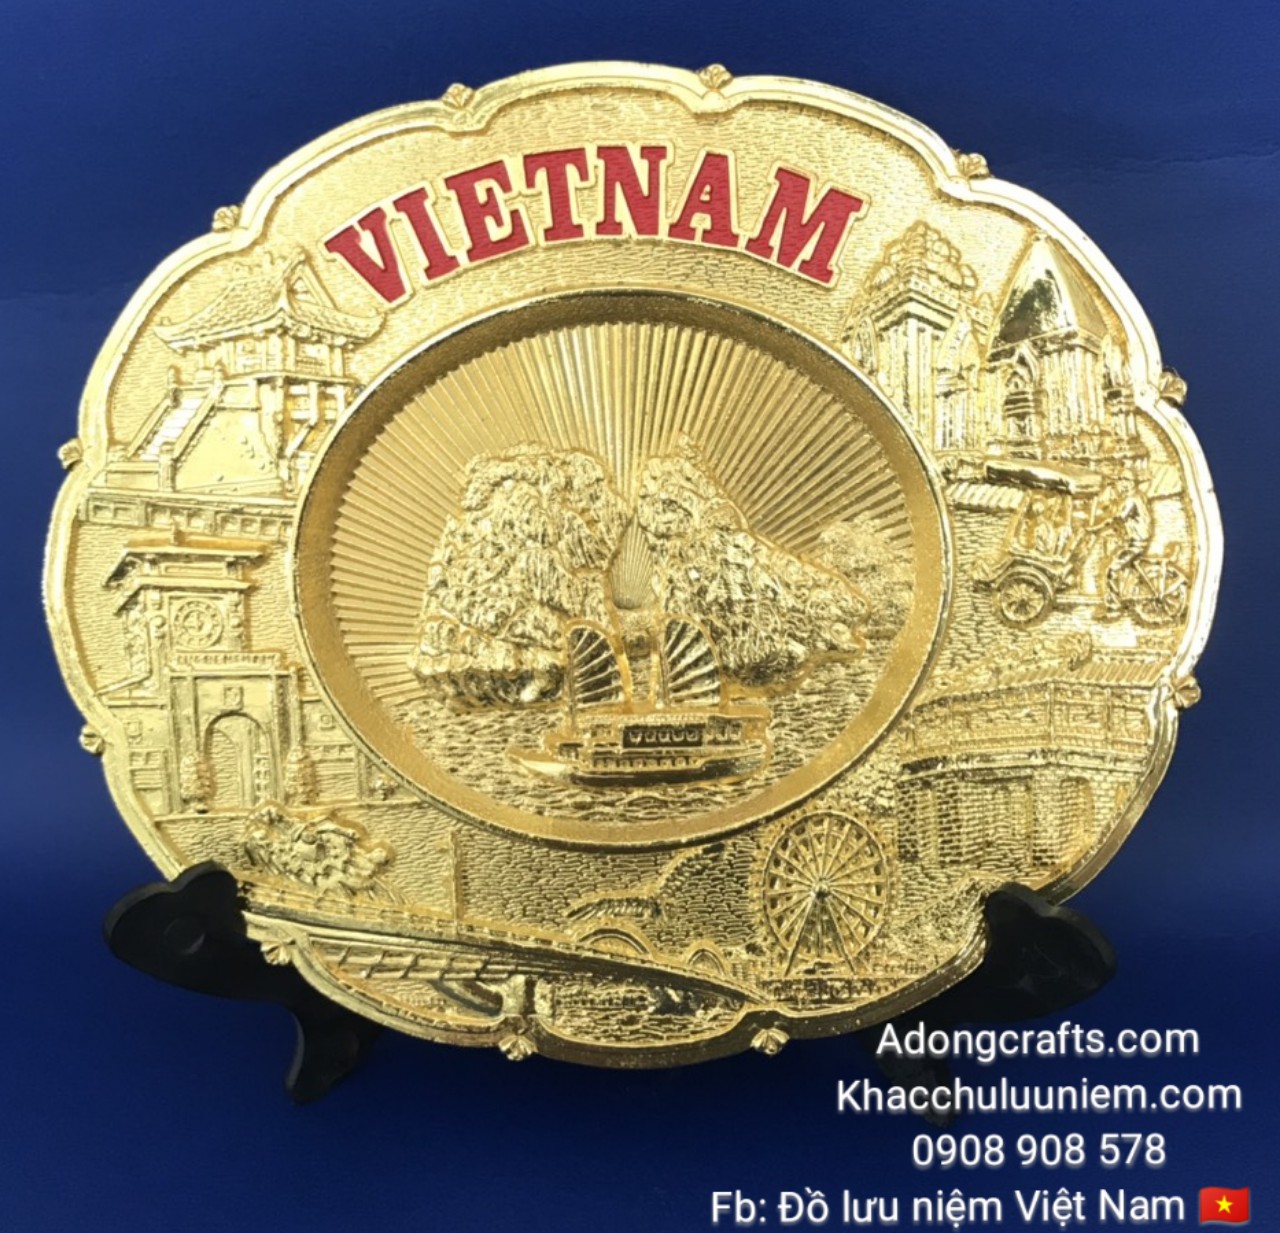 Đĩa kim loại hình thắng cảnh nổi tiếng Việt Nam với địa danh Biển nổi tiếng siêu đẹp